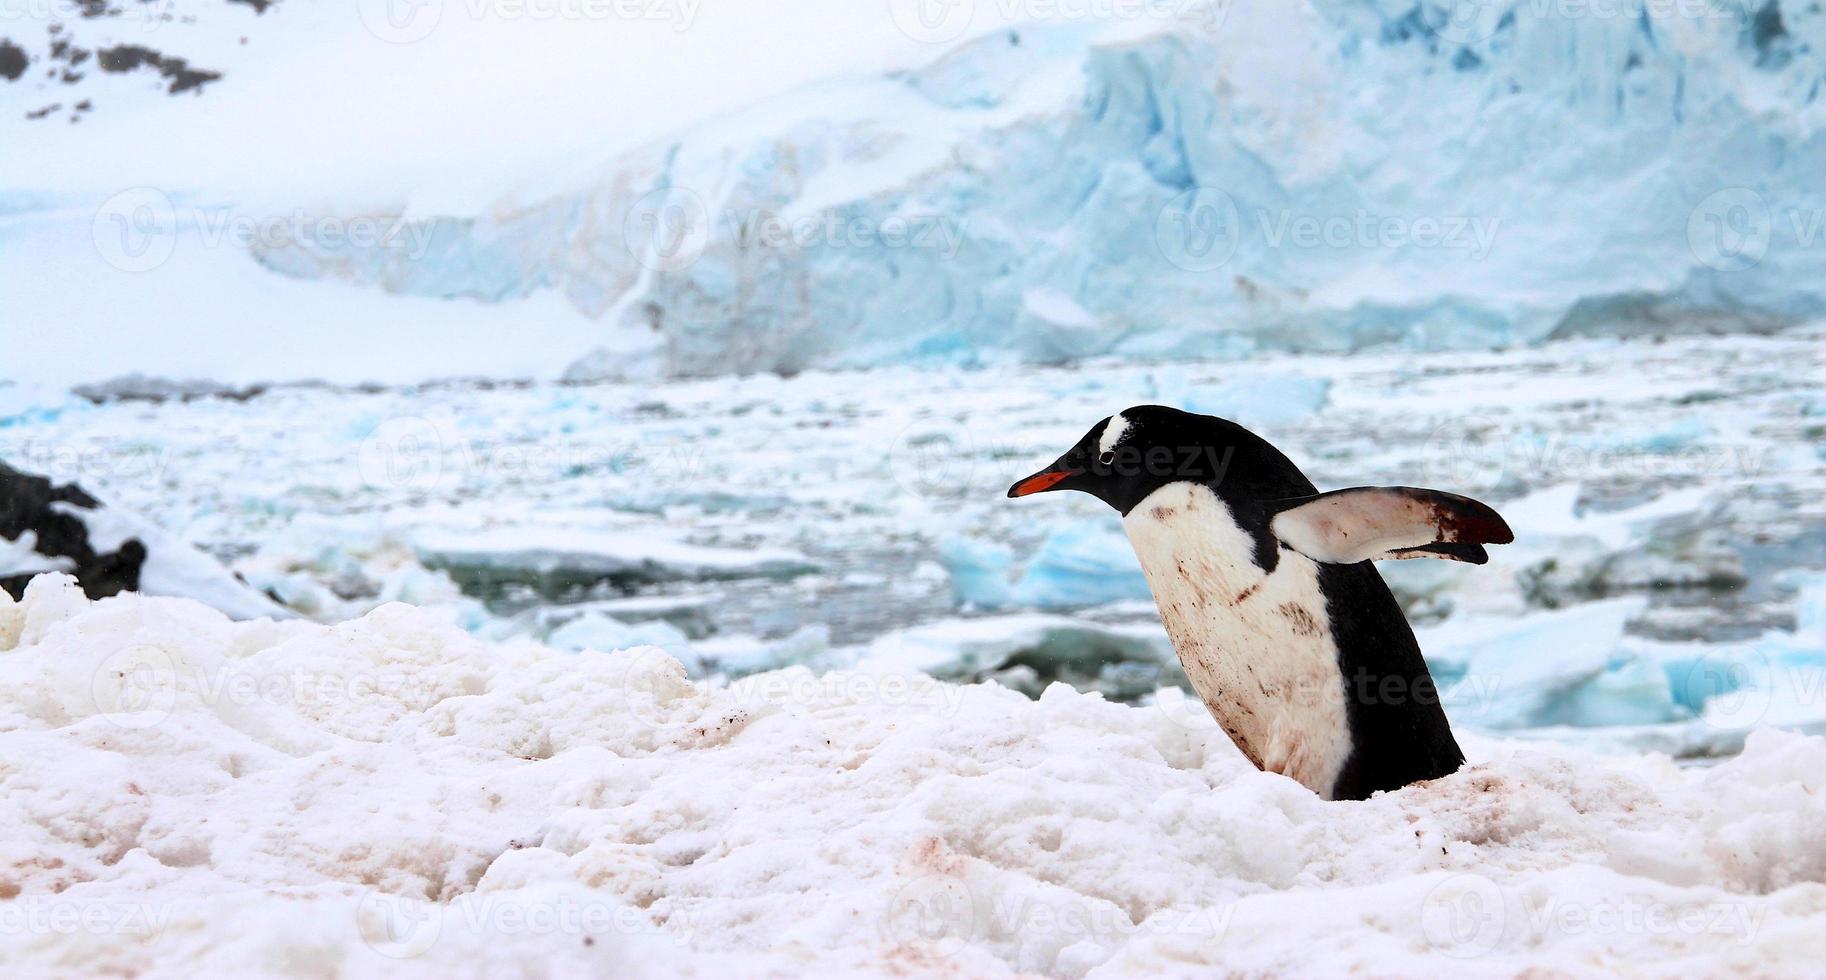 gentoo pingvin, cuverville ö, antarktis foto